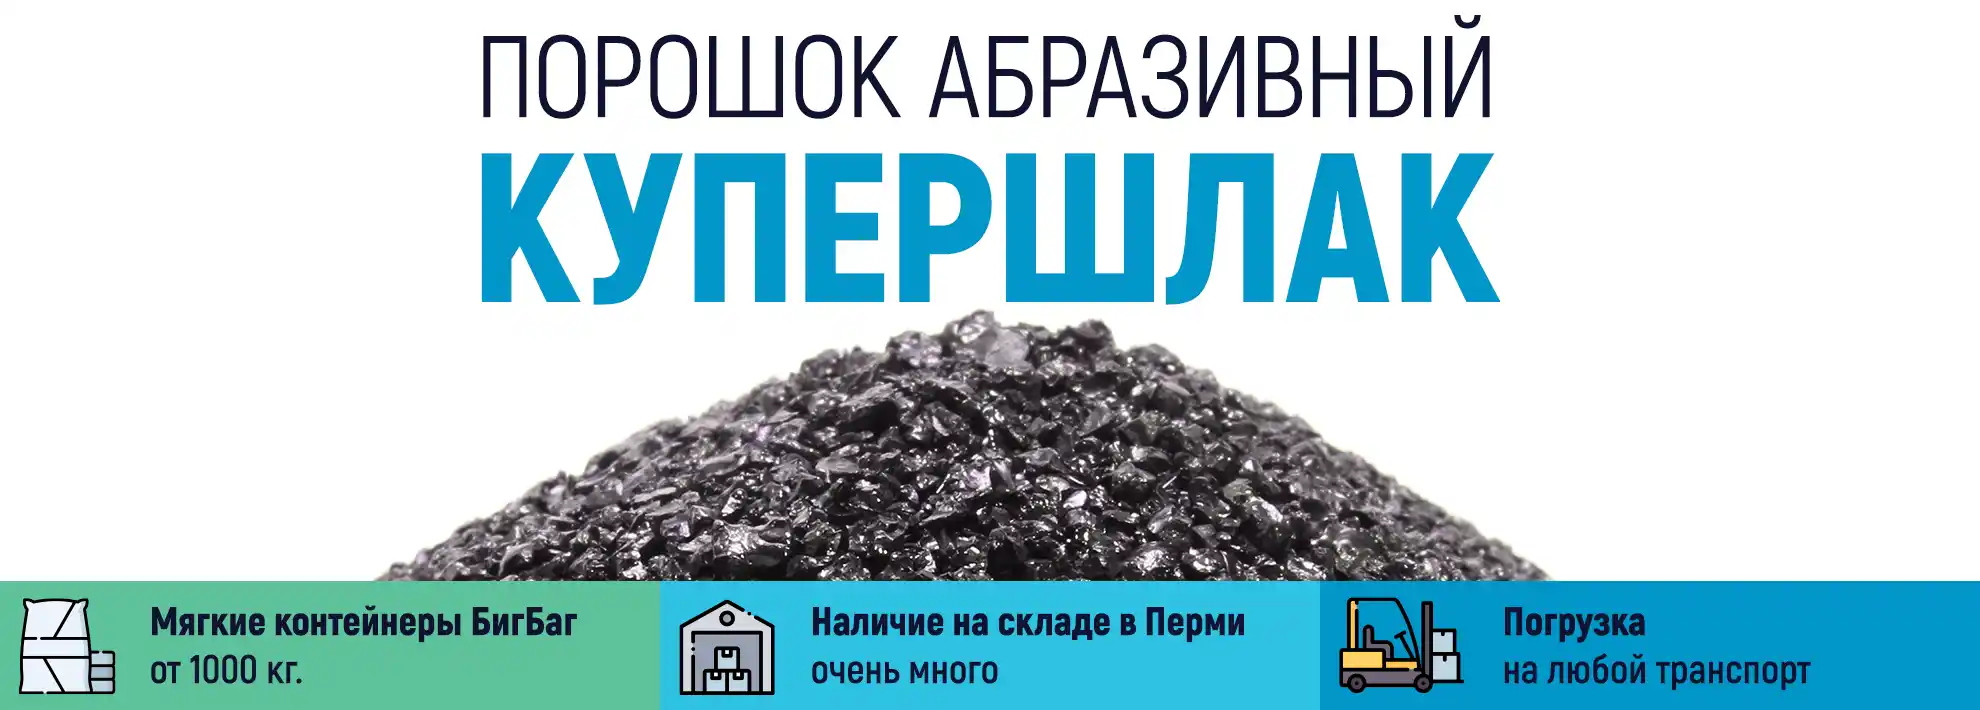 Абразивный песок высшего качества «КУПЕРШЛЭК» для пескоструйной обработки купить оптом и в розницу в Перми